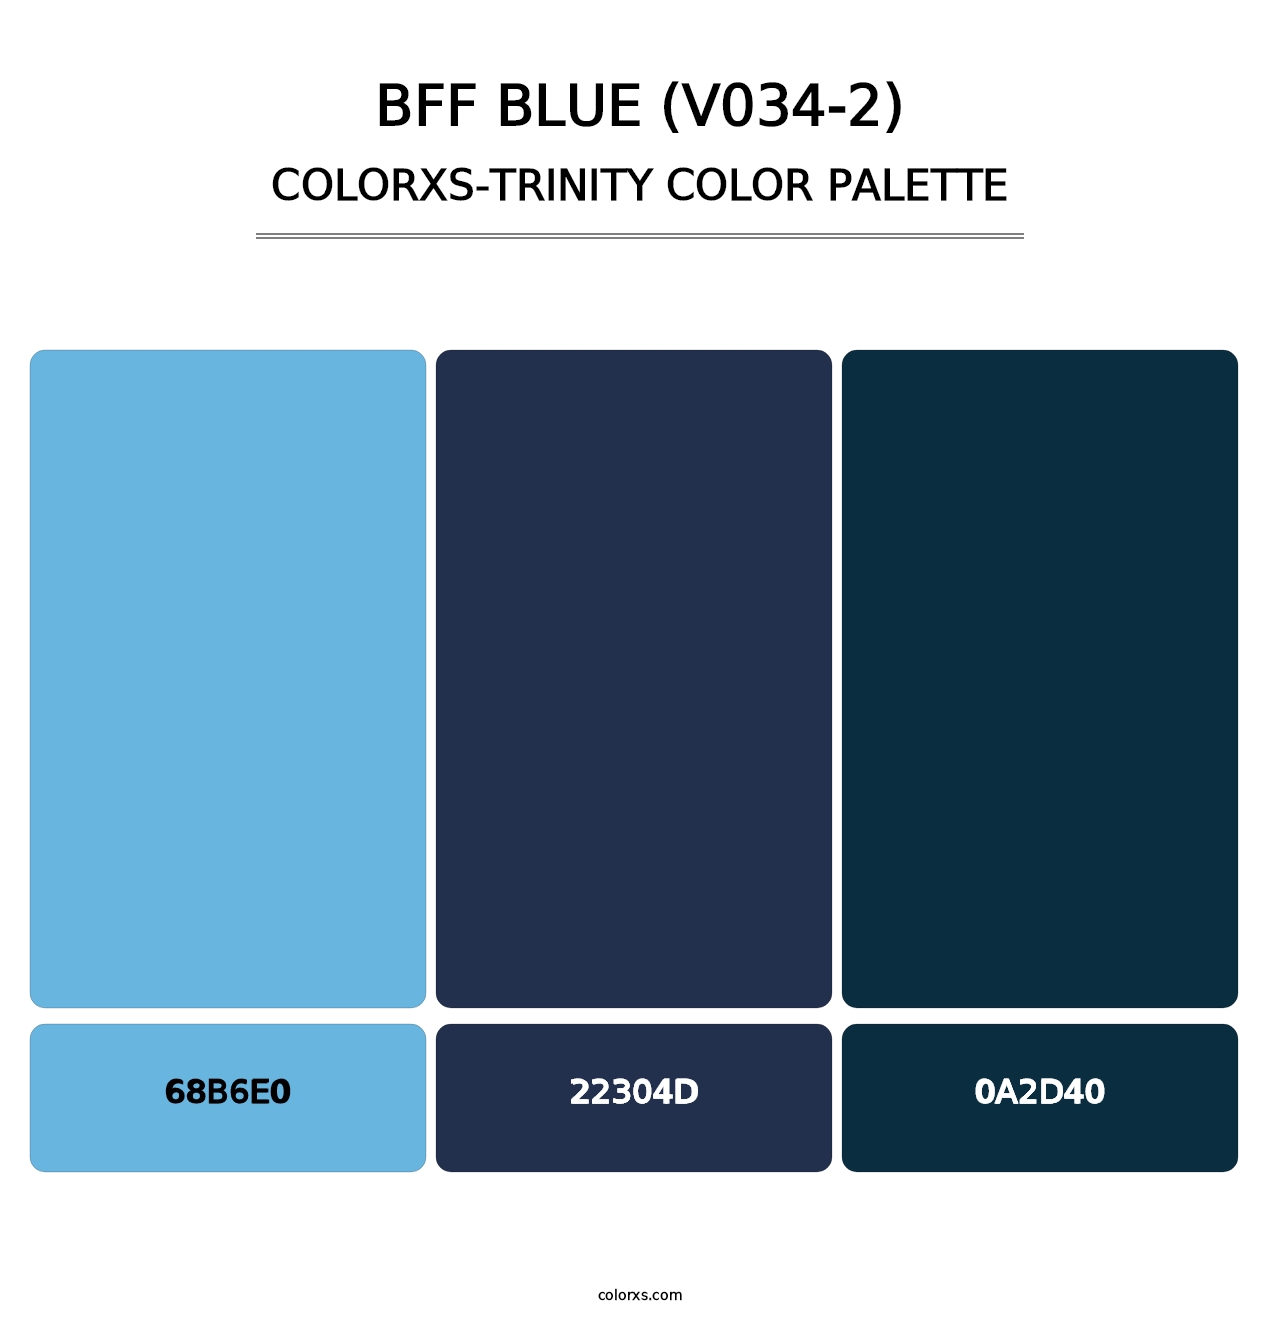 BFF Blue (V034-2) - Colorxs Trinity Palette